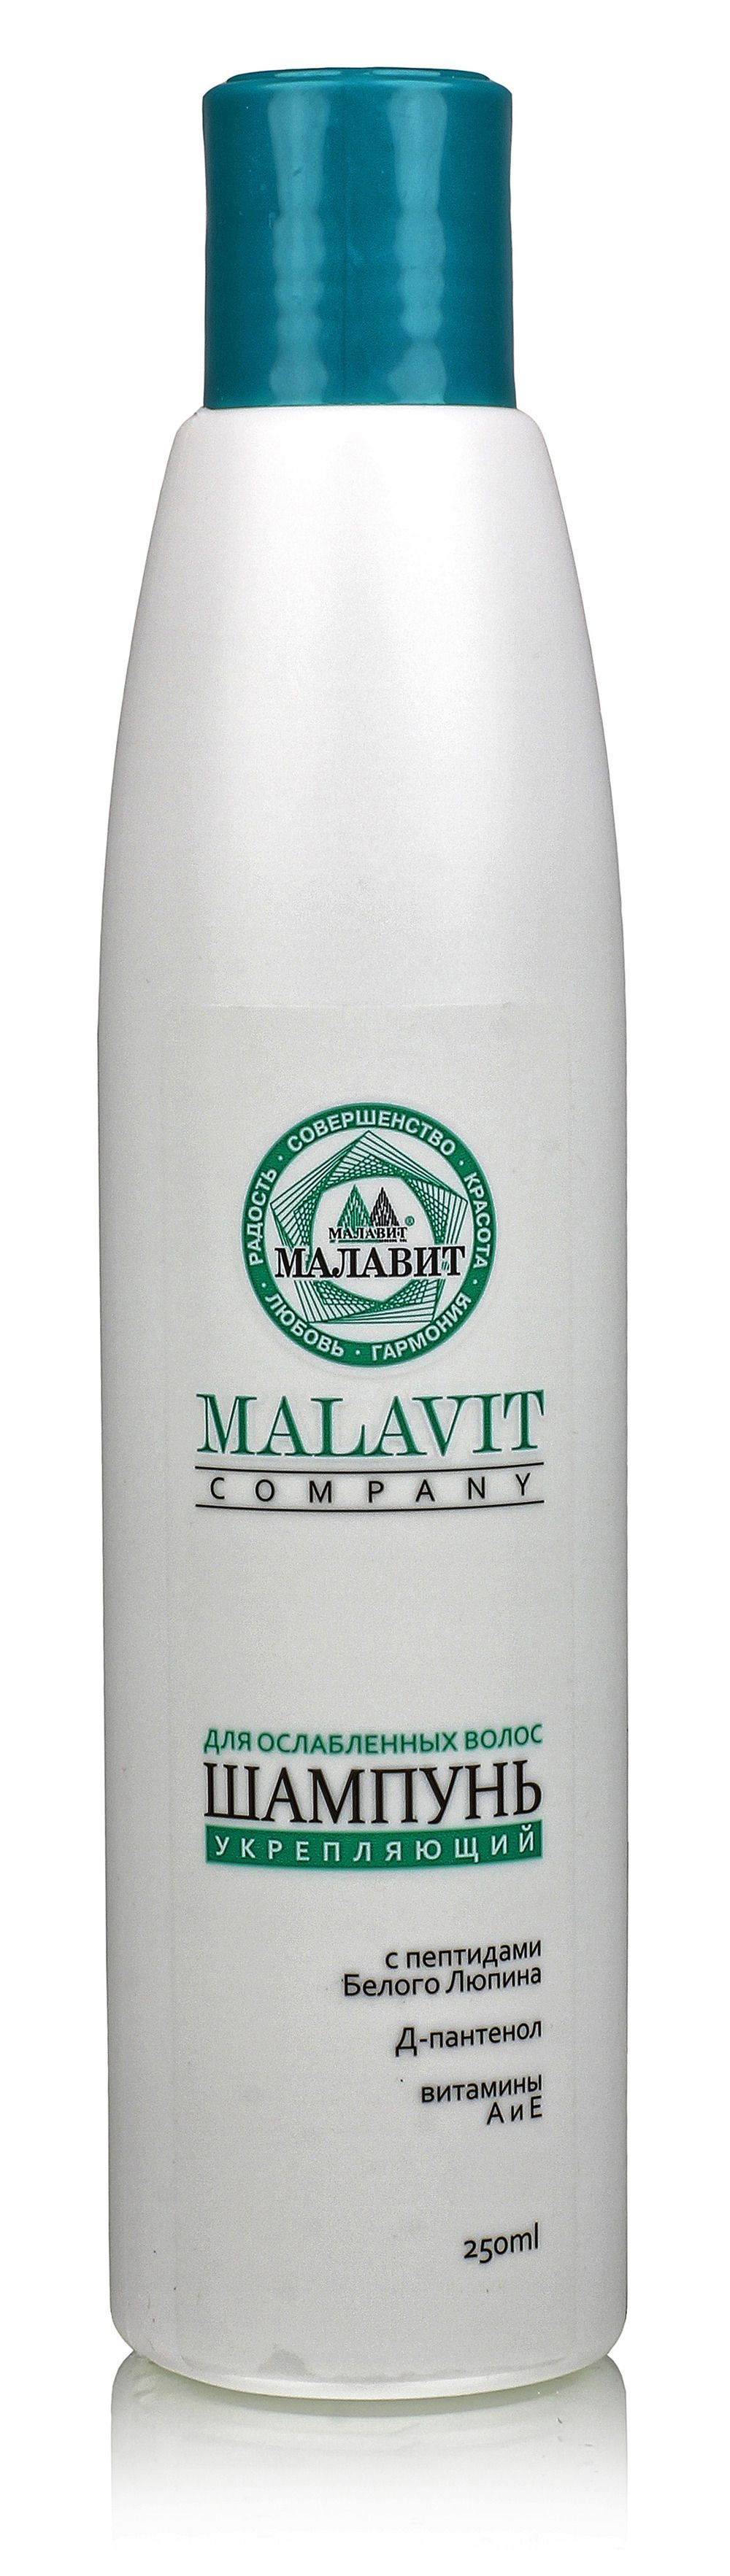 фото упаковки Малавит шампунь с пептидами белого люпина